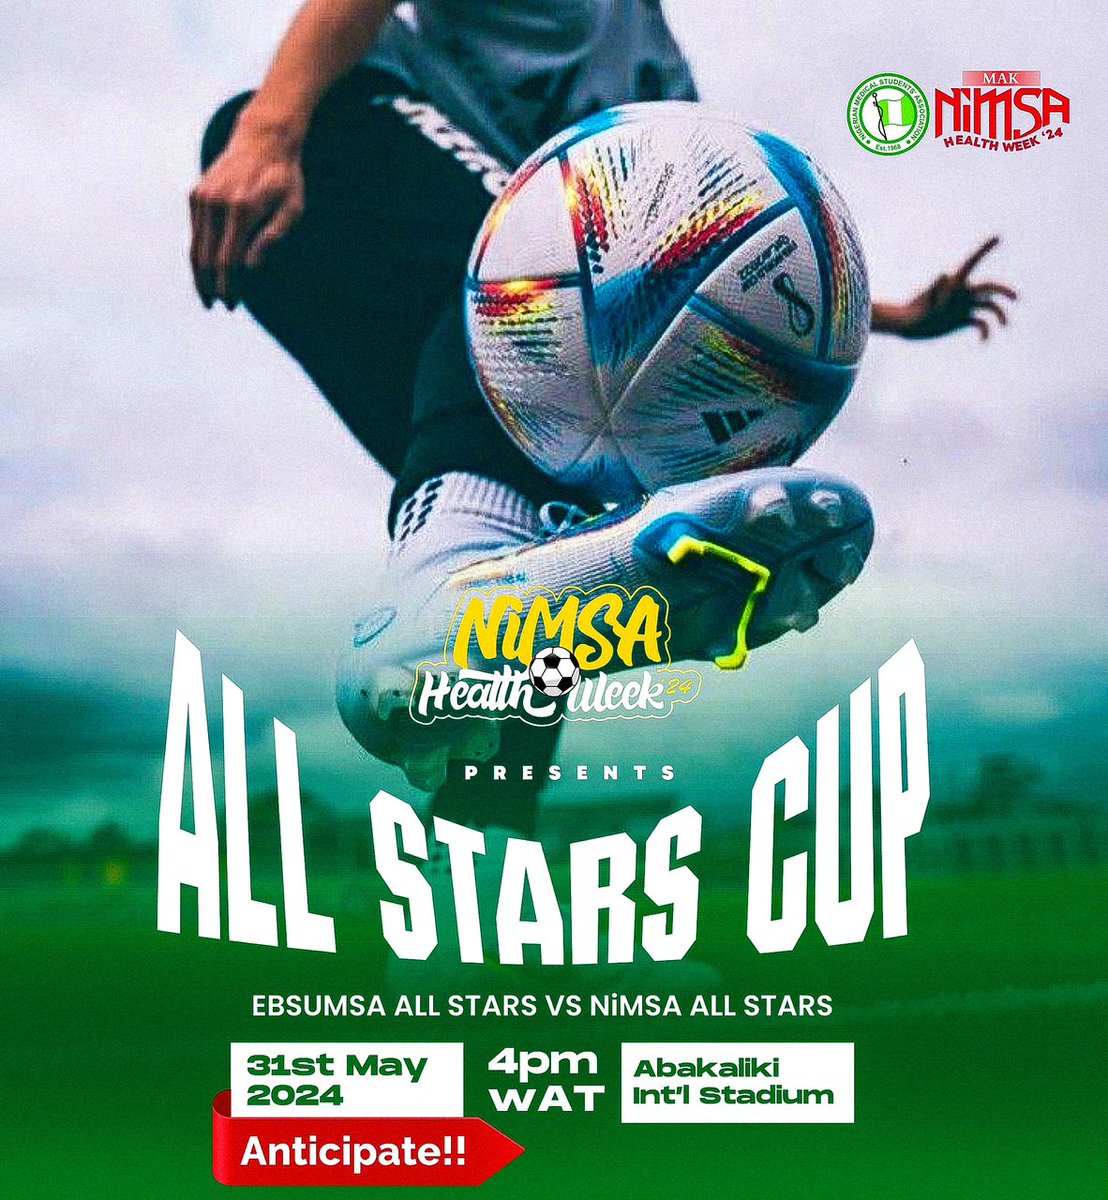 Mak Nimsa health week '24
An event you cannot afford to miss💥💥

Ebsumsa Allstars vs Nimsa Allstars..

Mind blowing isn't it🌚😏

@NiMSA_Nigeria 
@Joemedikals 
#nimsahealthweek
#mak '24
#saltcity